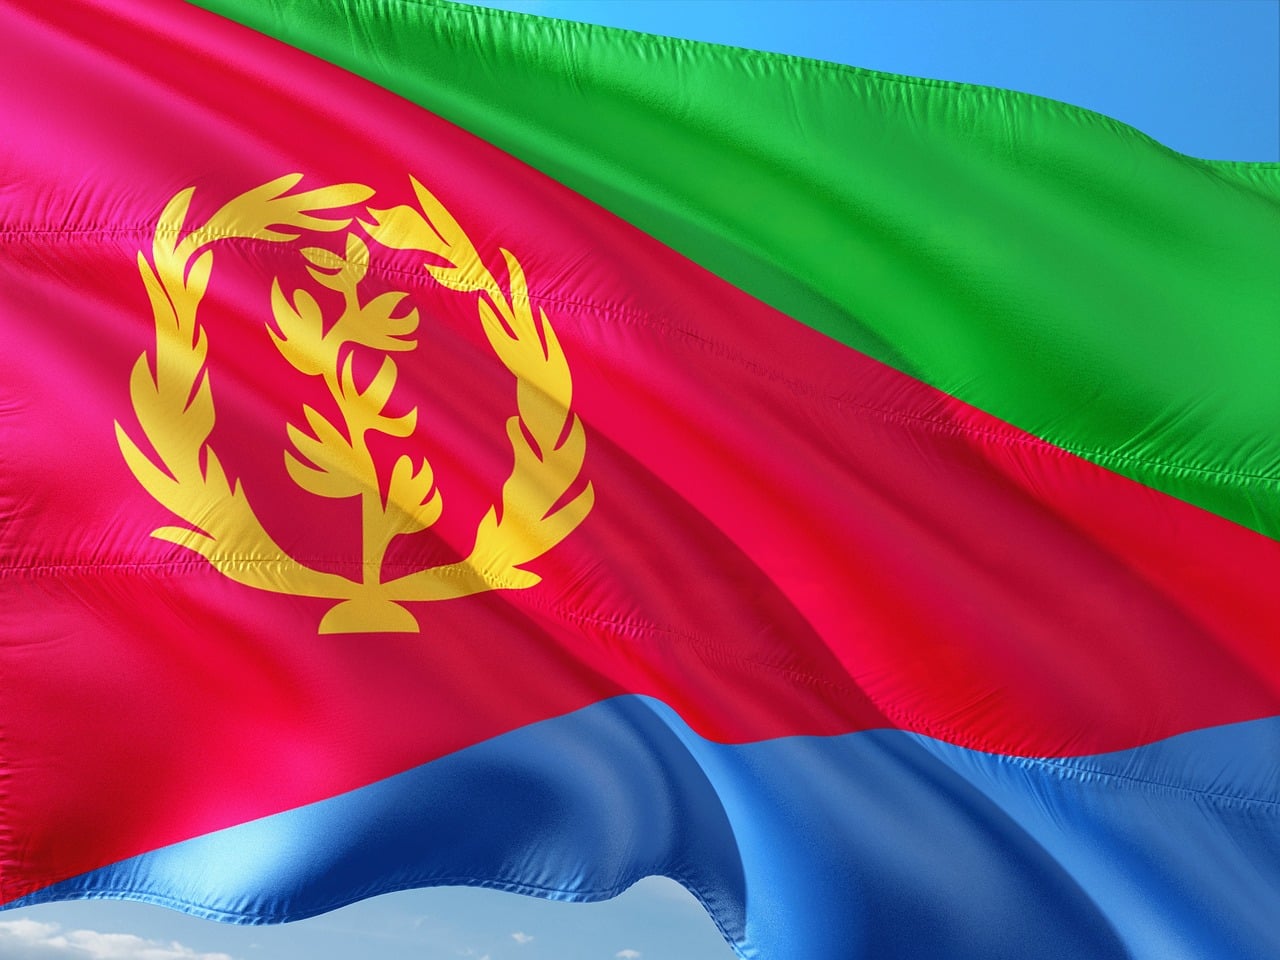 Flagge von Eritrea mit einem grünen Dreieck entlang des Mastes und roten, blauen und grünen horizontalen Streifen, überlagert von einem goldfarbenen Olivenzweig-Kranz in der Mitte.